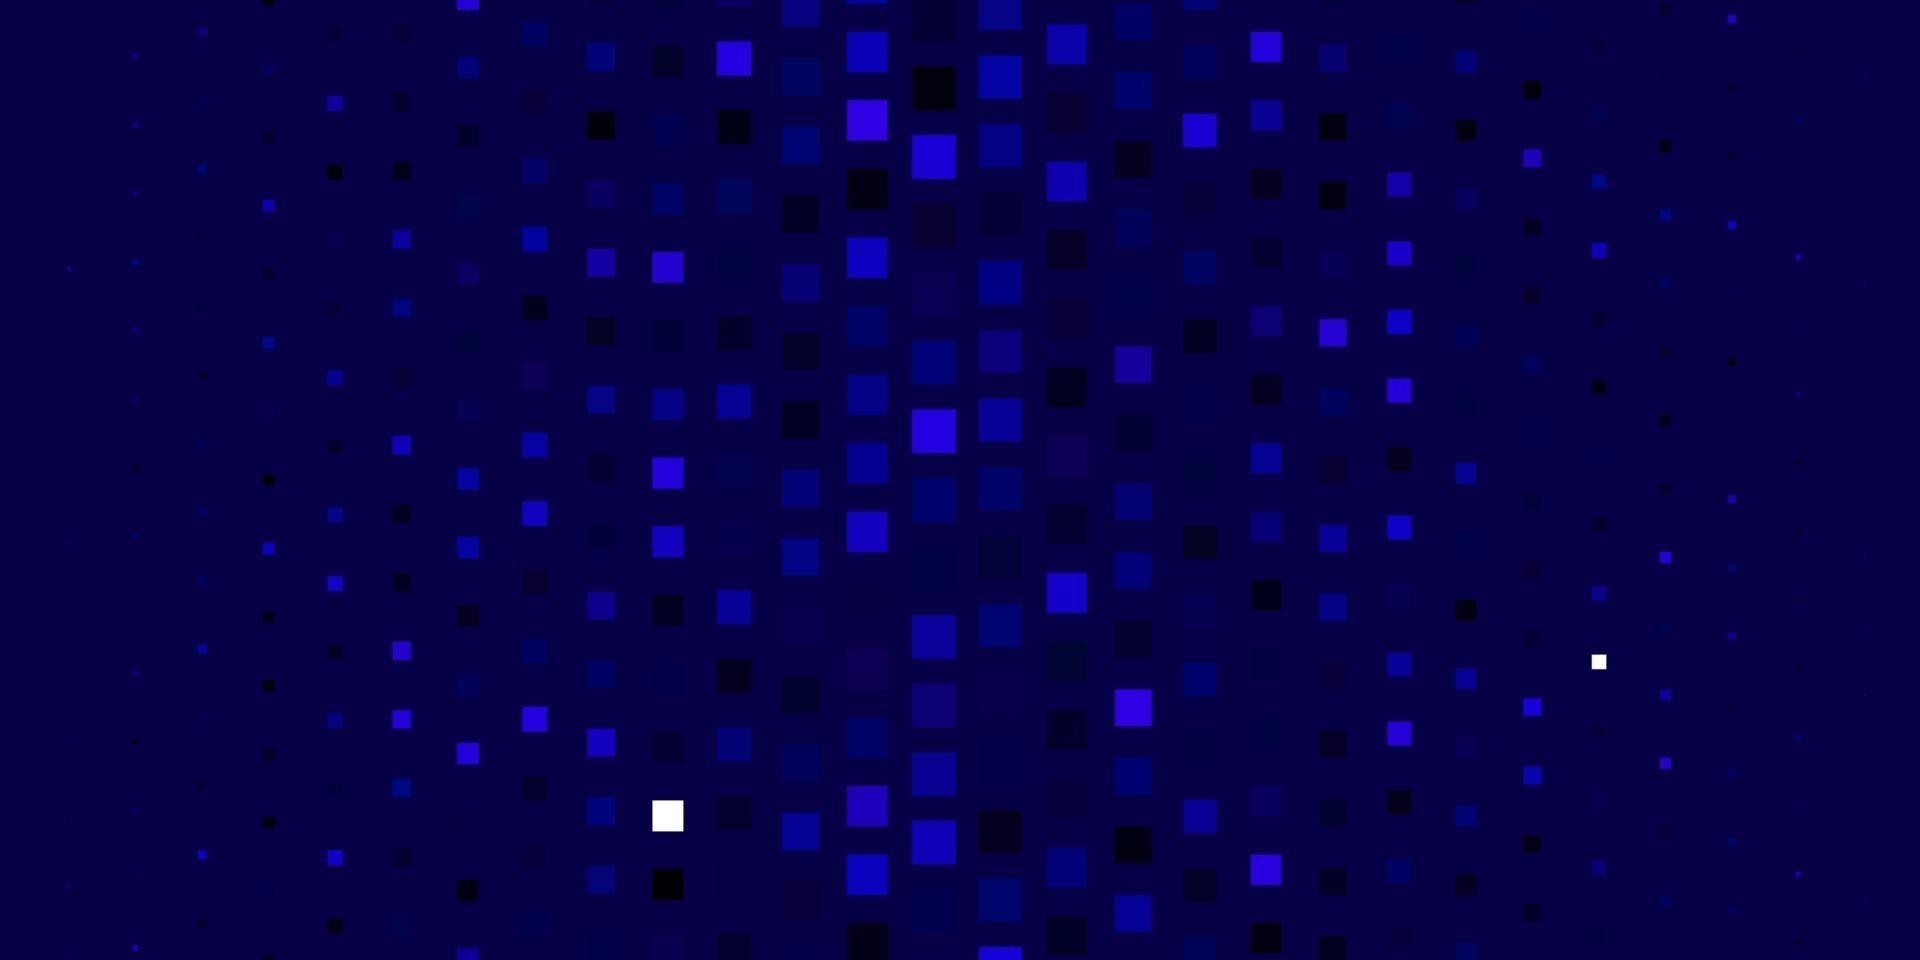 ljusrosa, blå vektorlayout med linjer, rektanglar. vektor